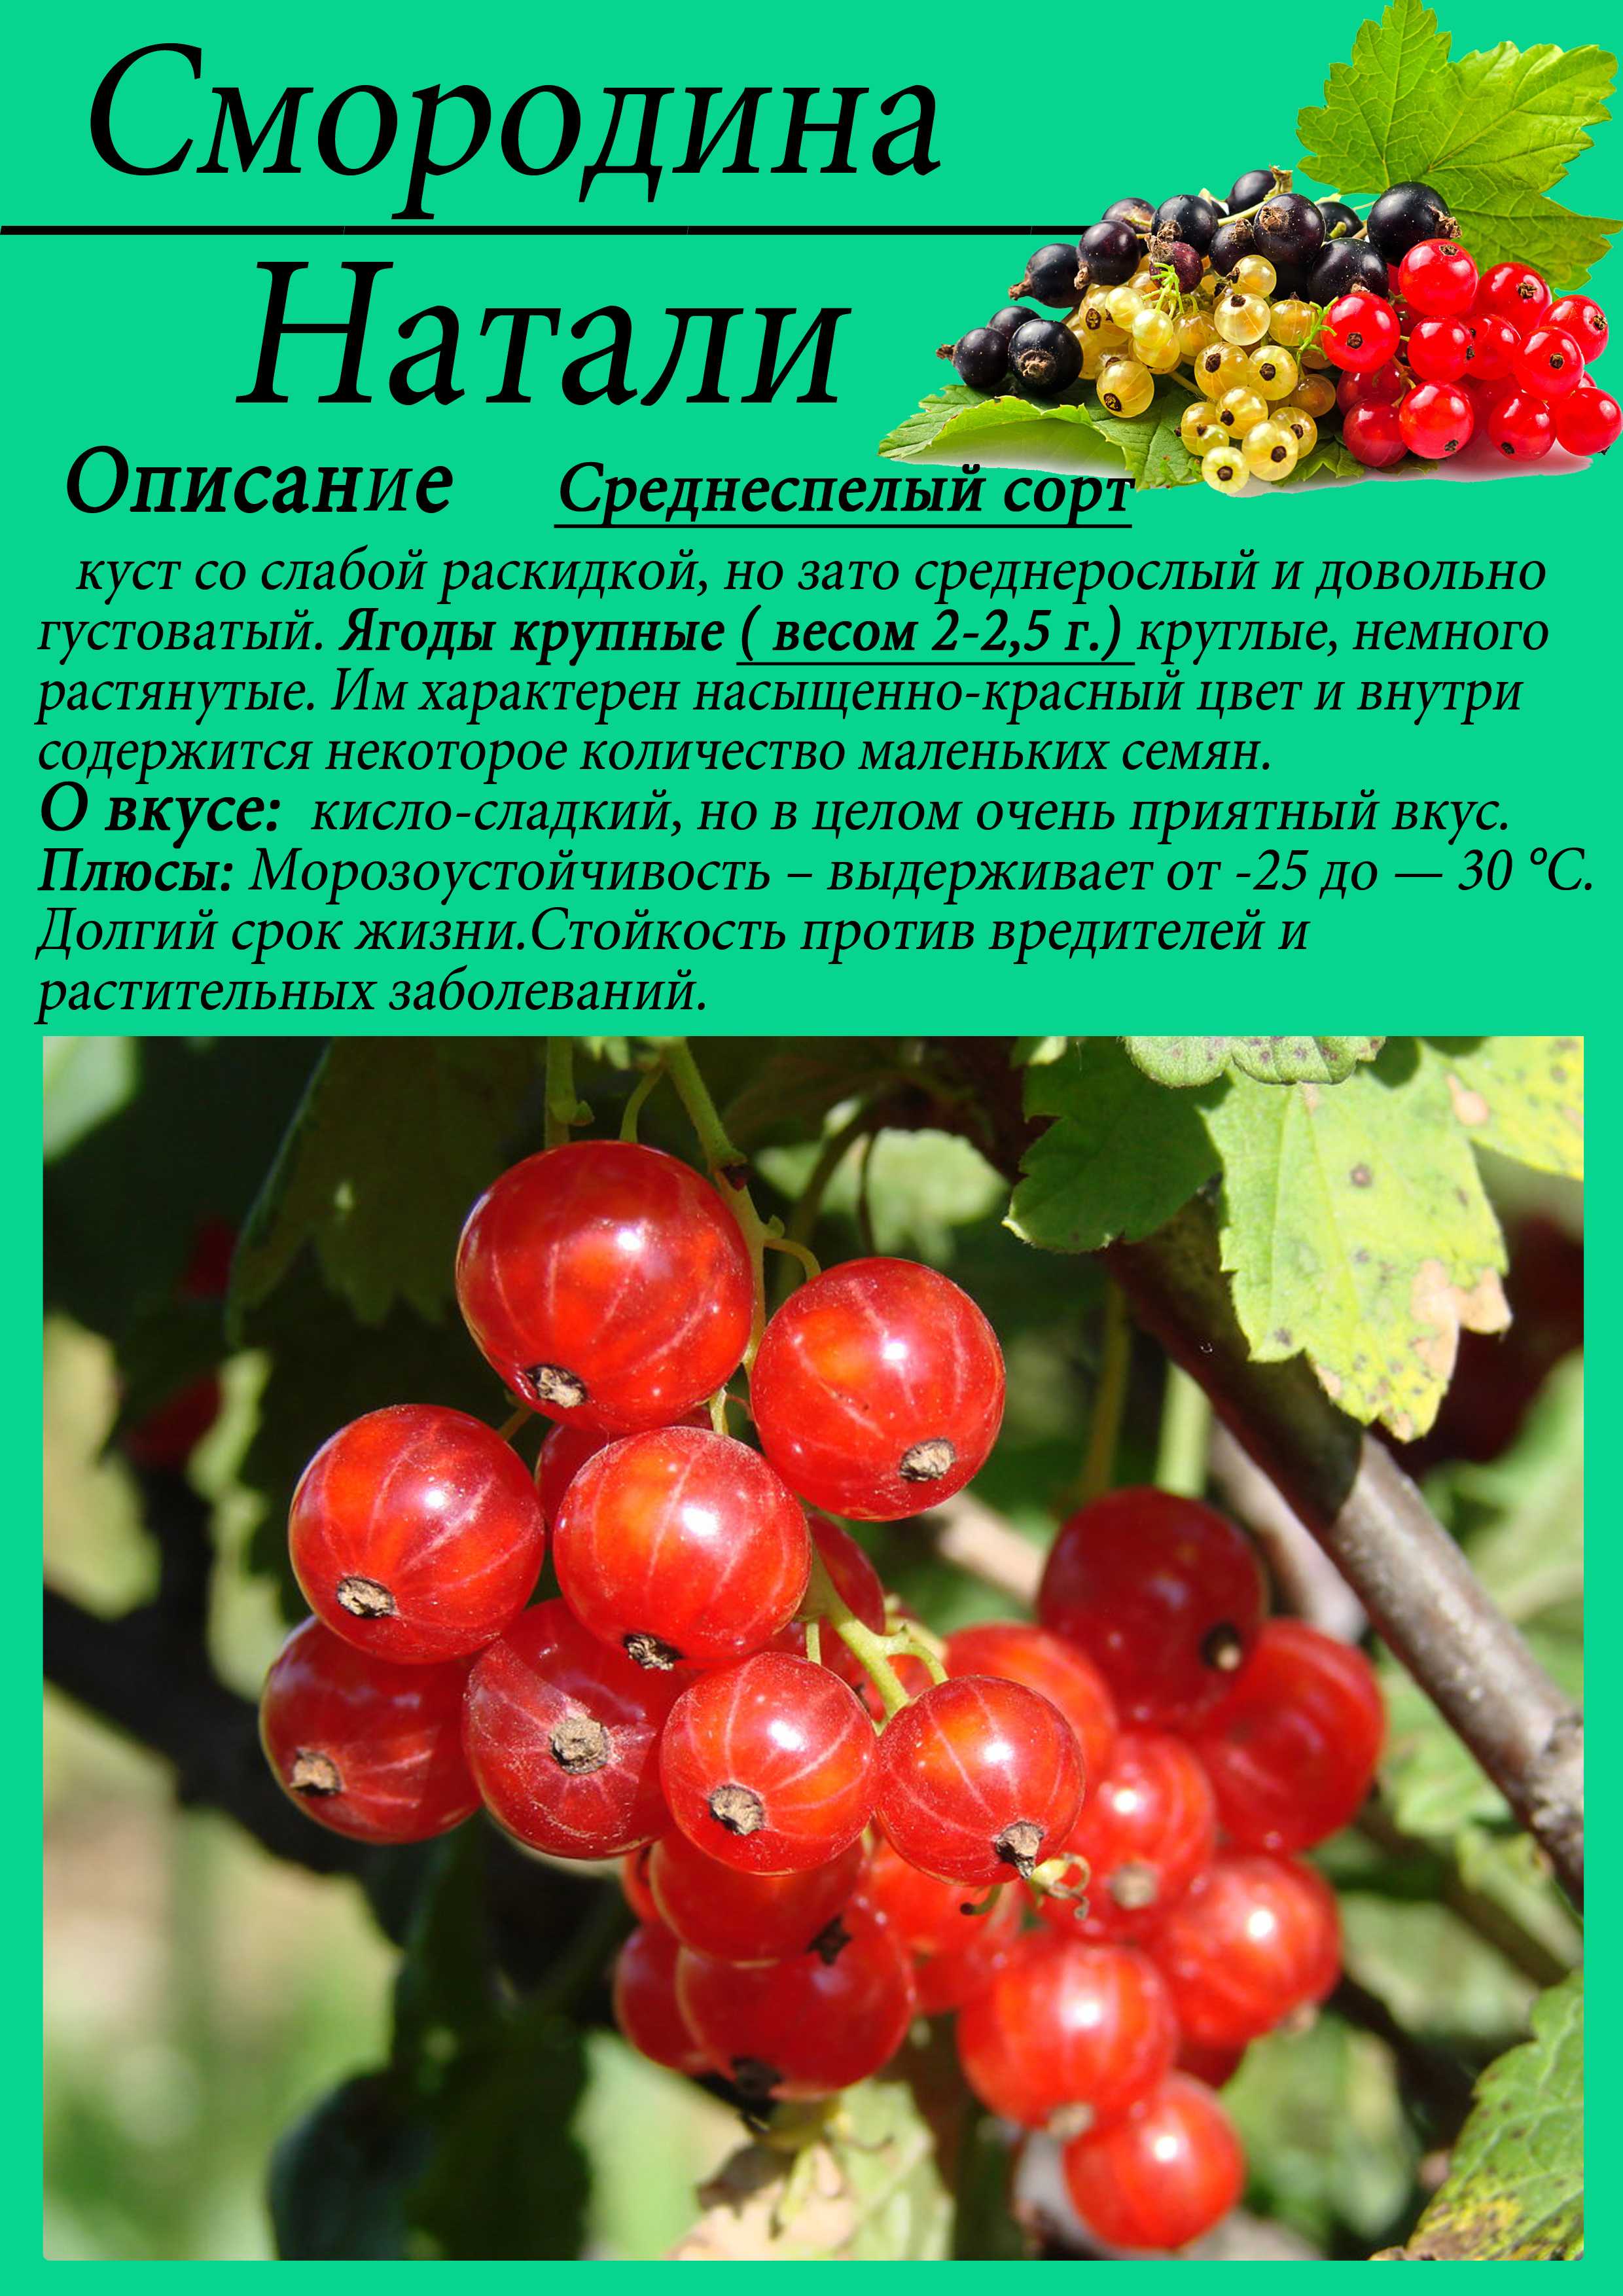 Смородина натали: описание сорта красной ягоды и его фото selo.guru — интернет портал о сельском хозяйстве